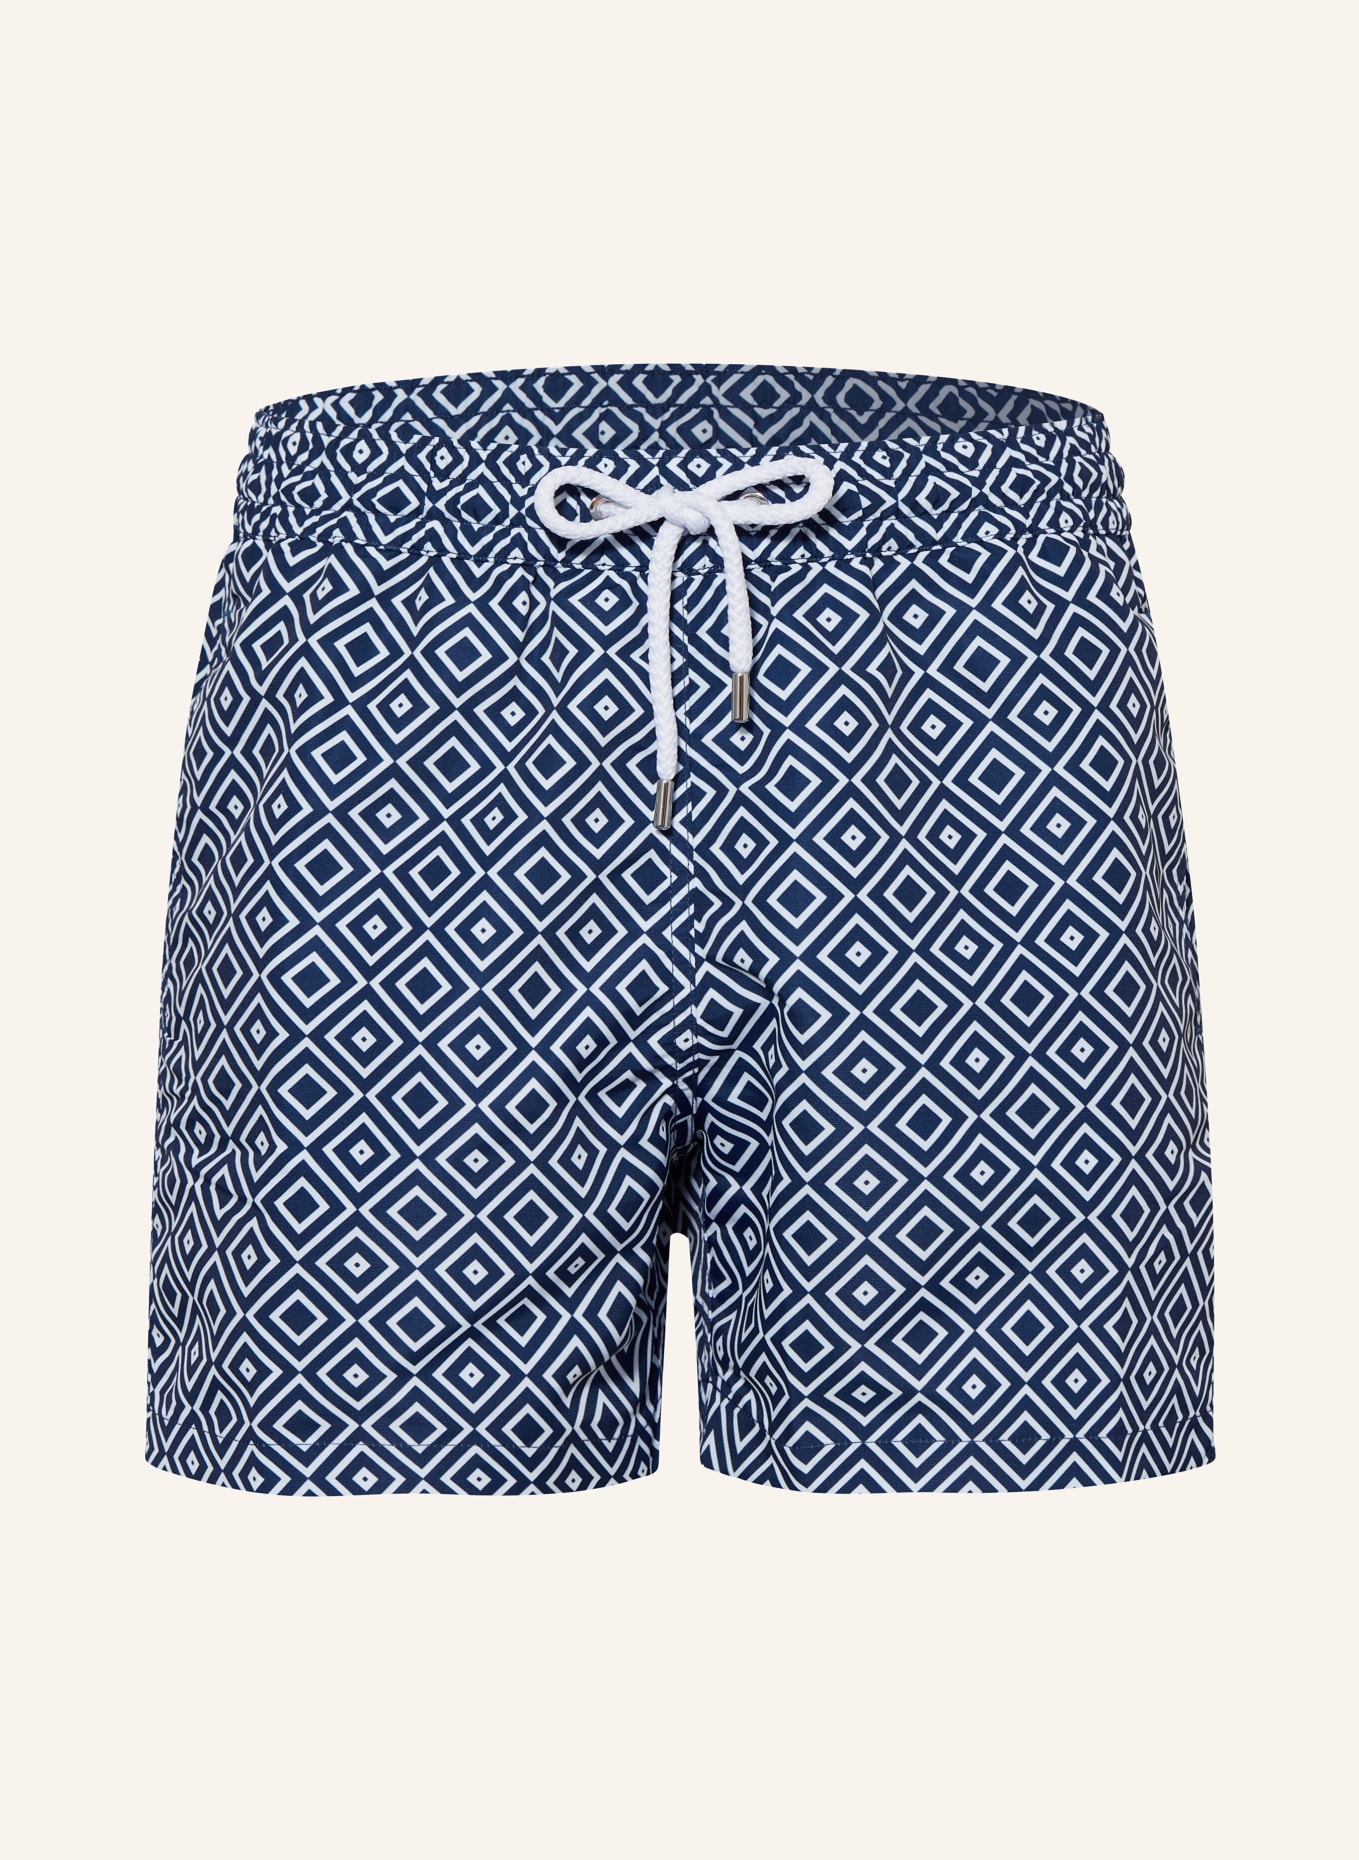 FRESCOBOL CARIOCA Swim shorts ANGRA SPORT, Color: BLUE/ WHITE (Image 1)